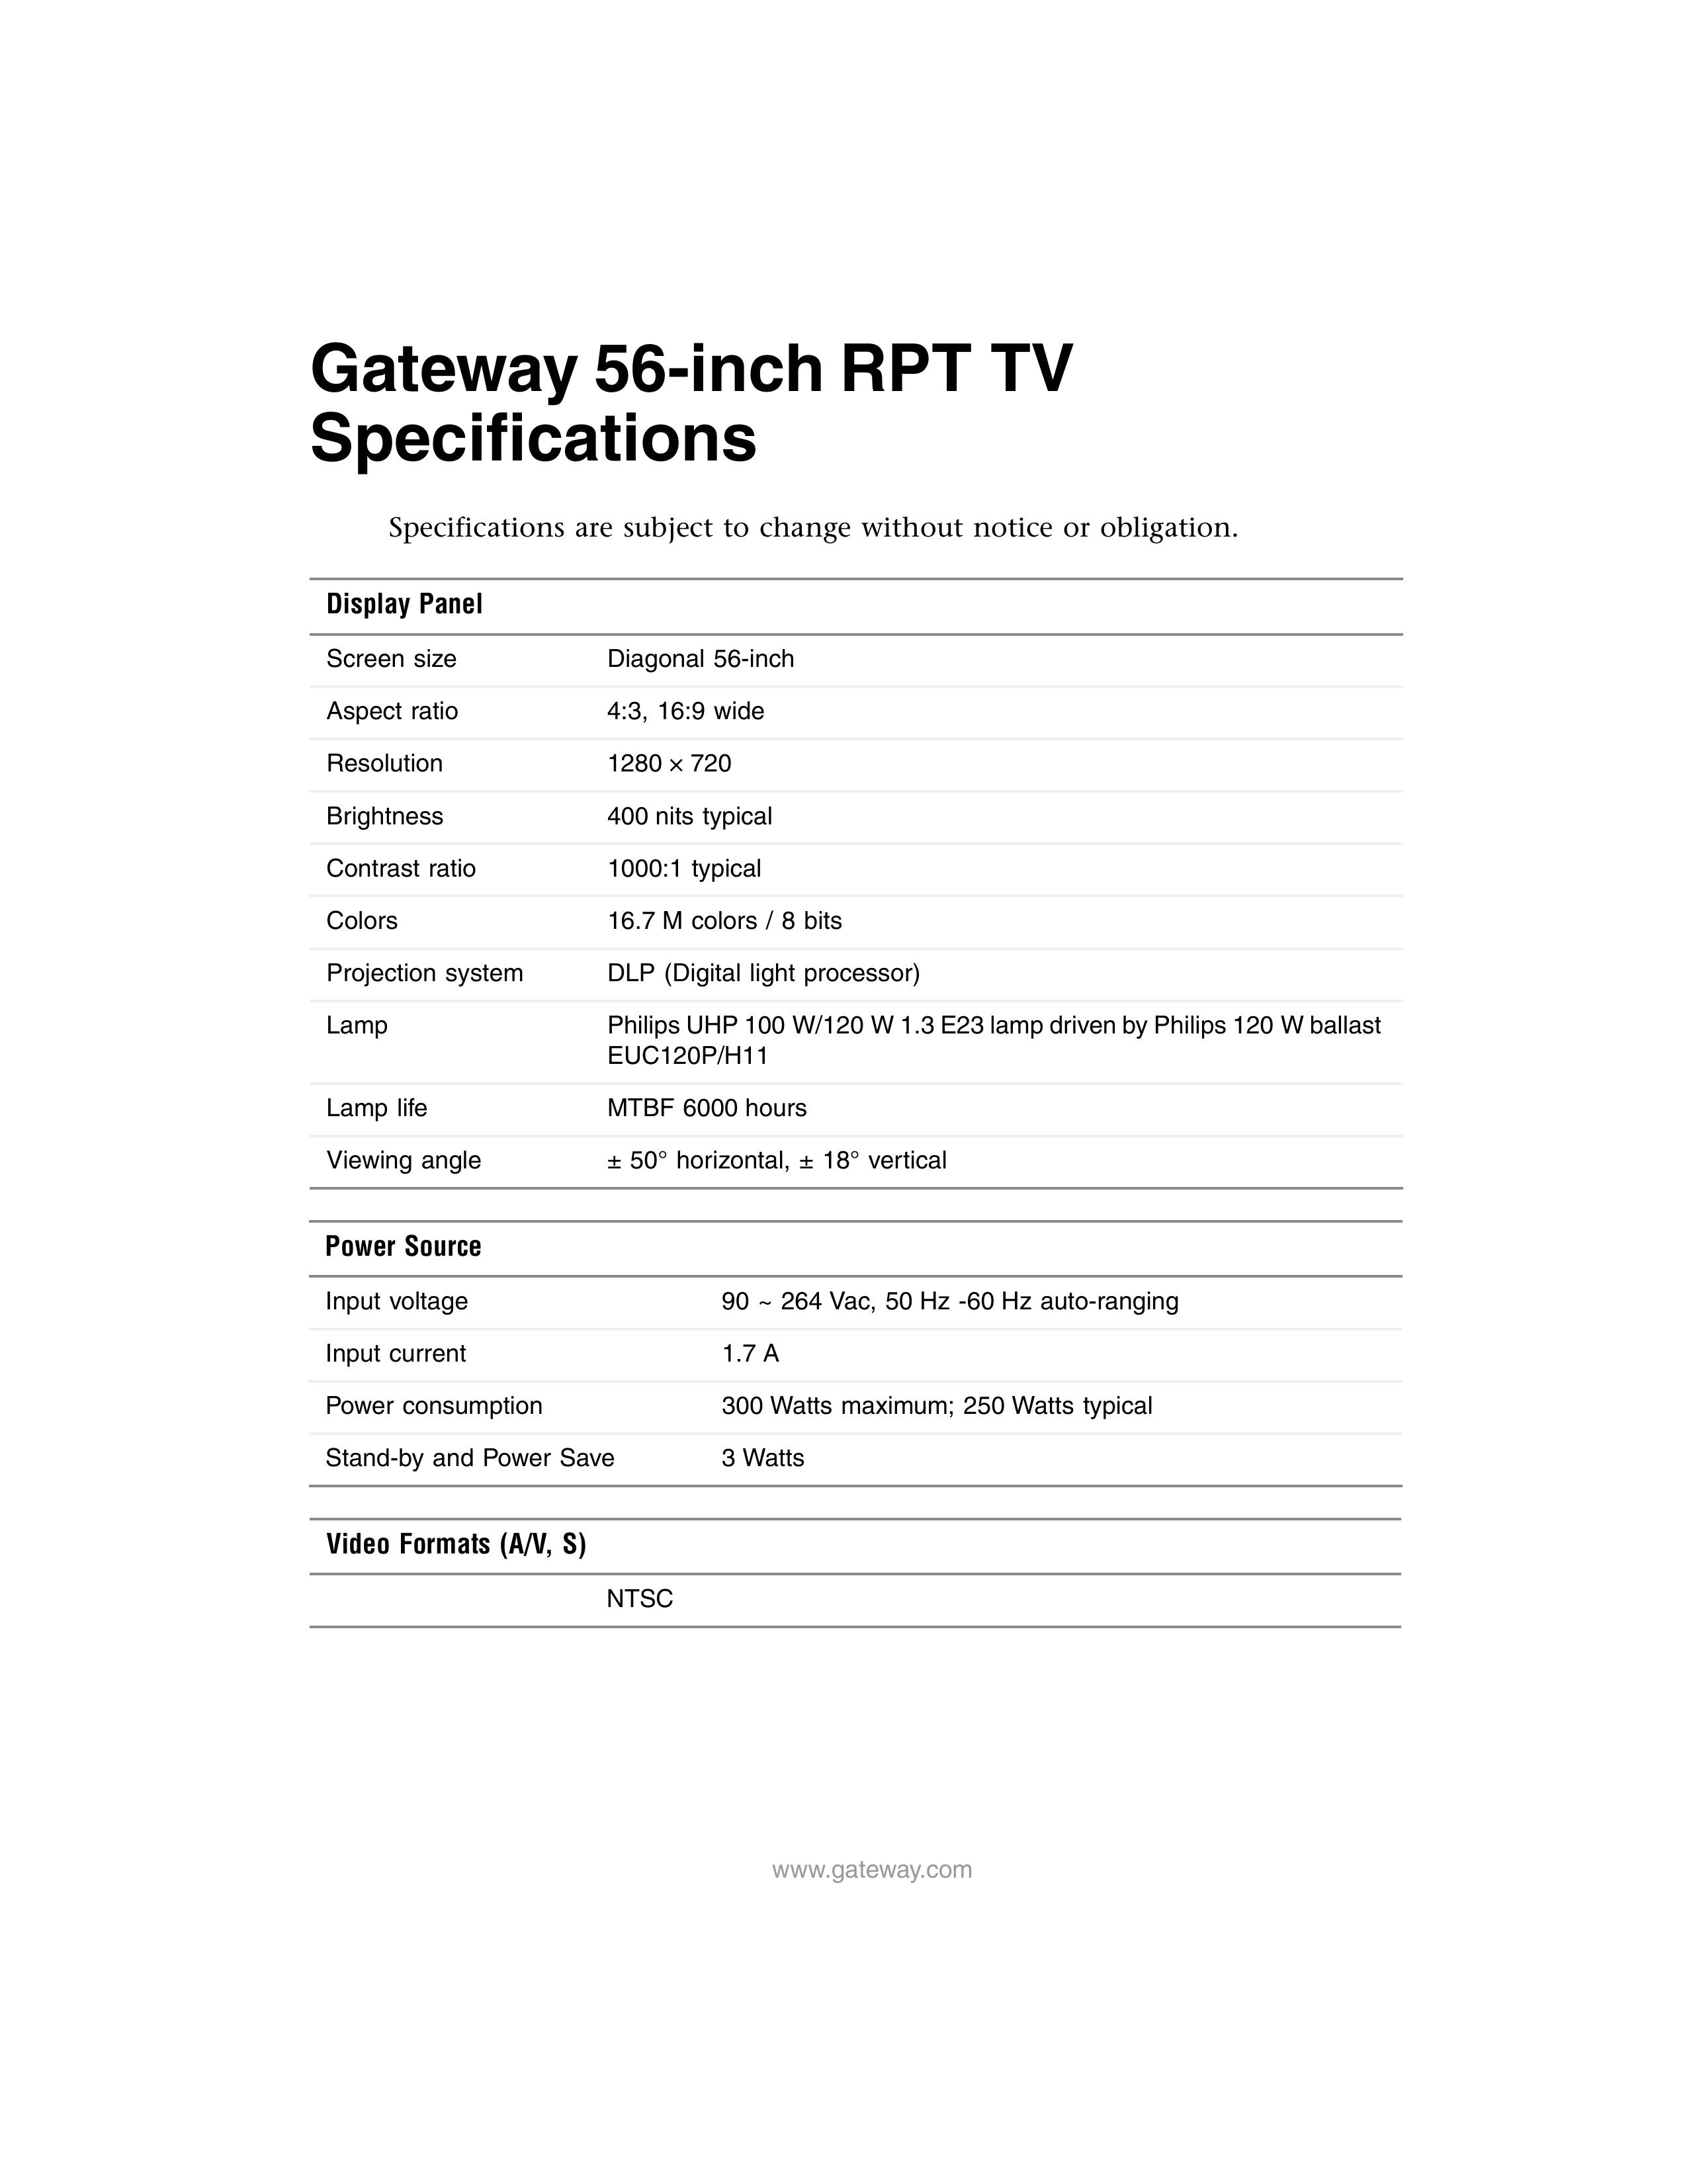 Gateway RPT TV Handheld TV User Manual